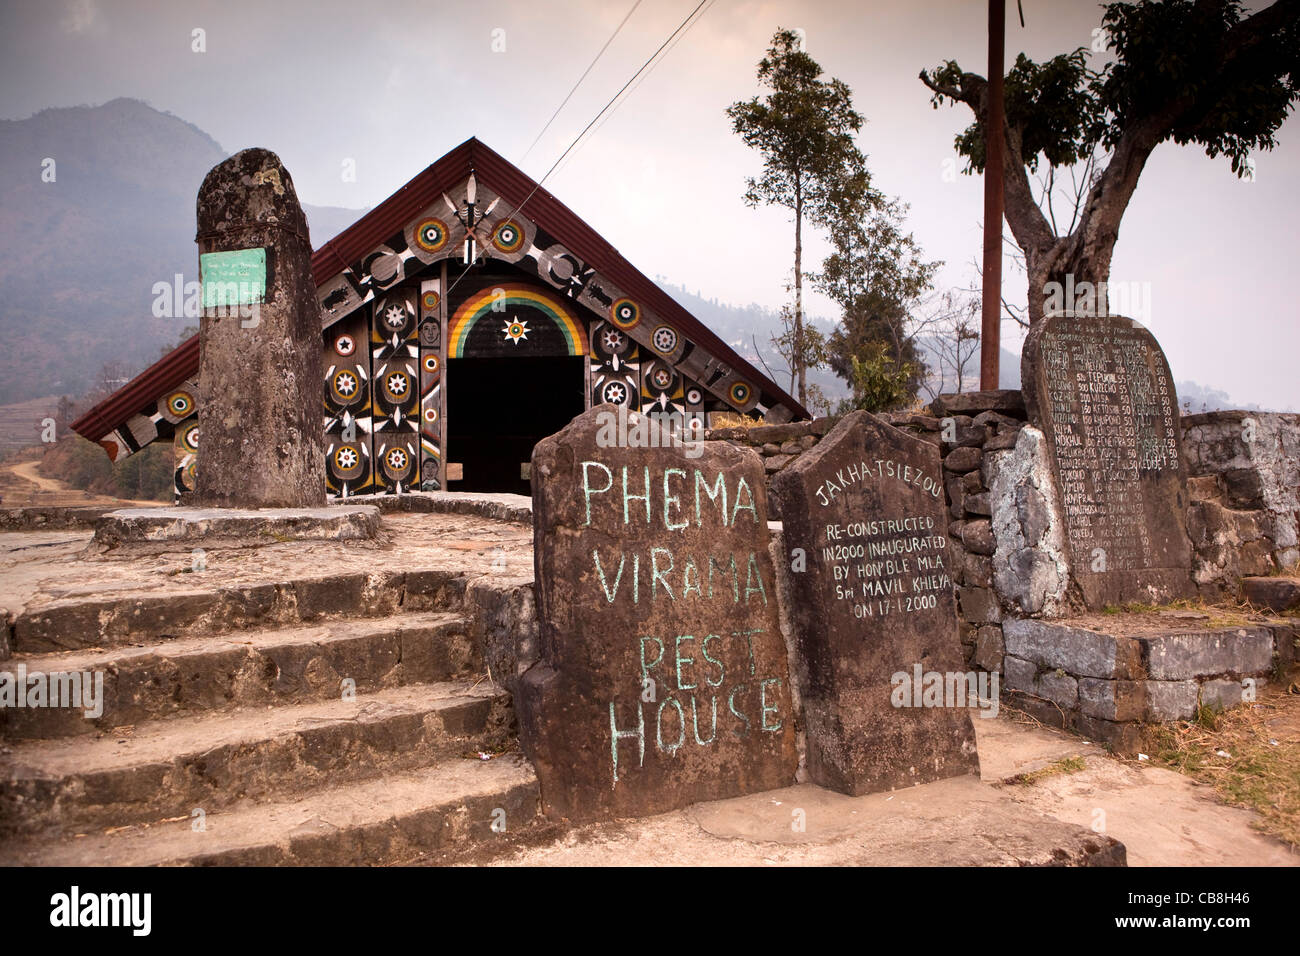 India, Nagaland, Jakhama, decorato tradizionalmente sacro guest house in ingresso al villaggio Foto Stock